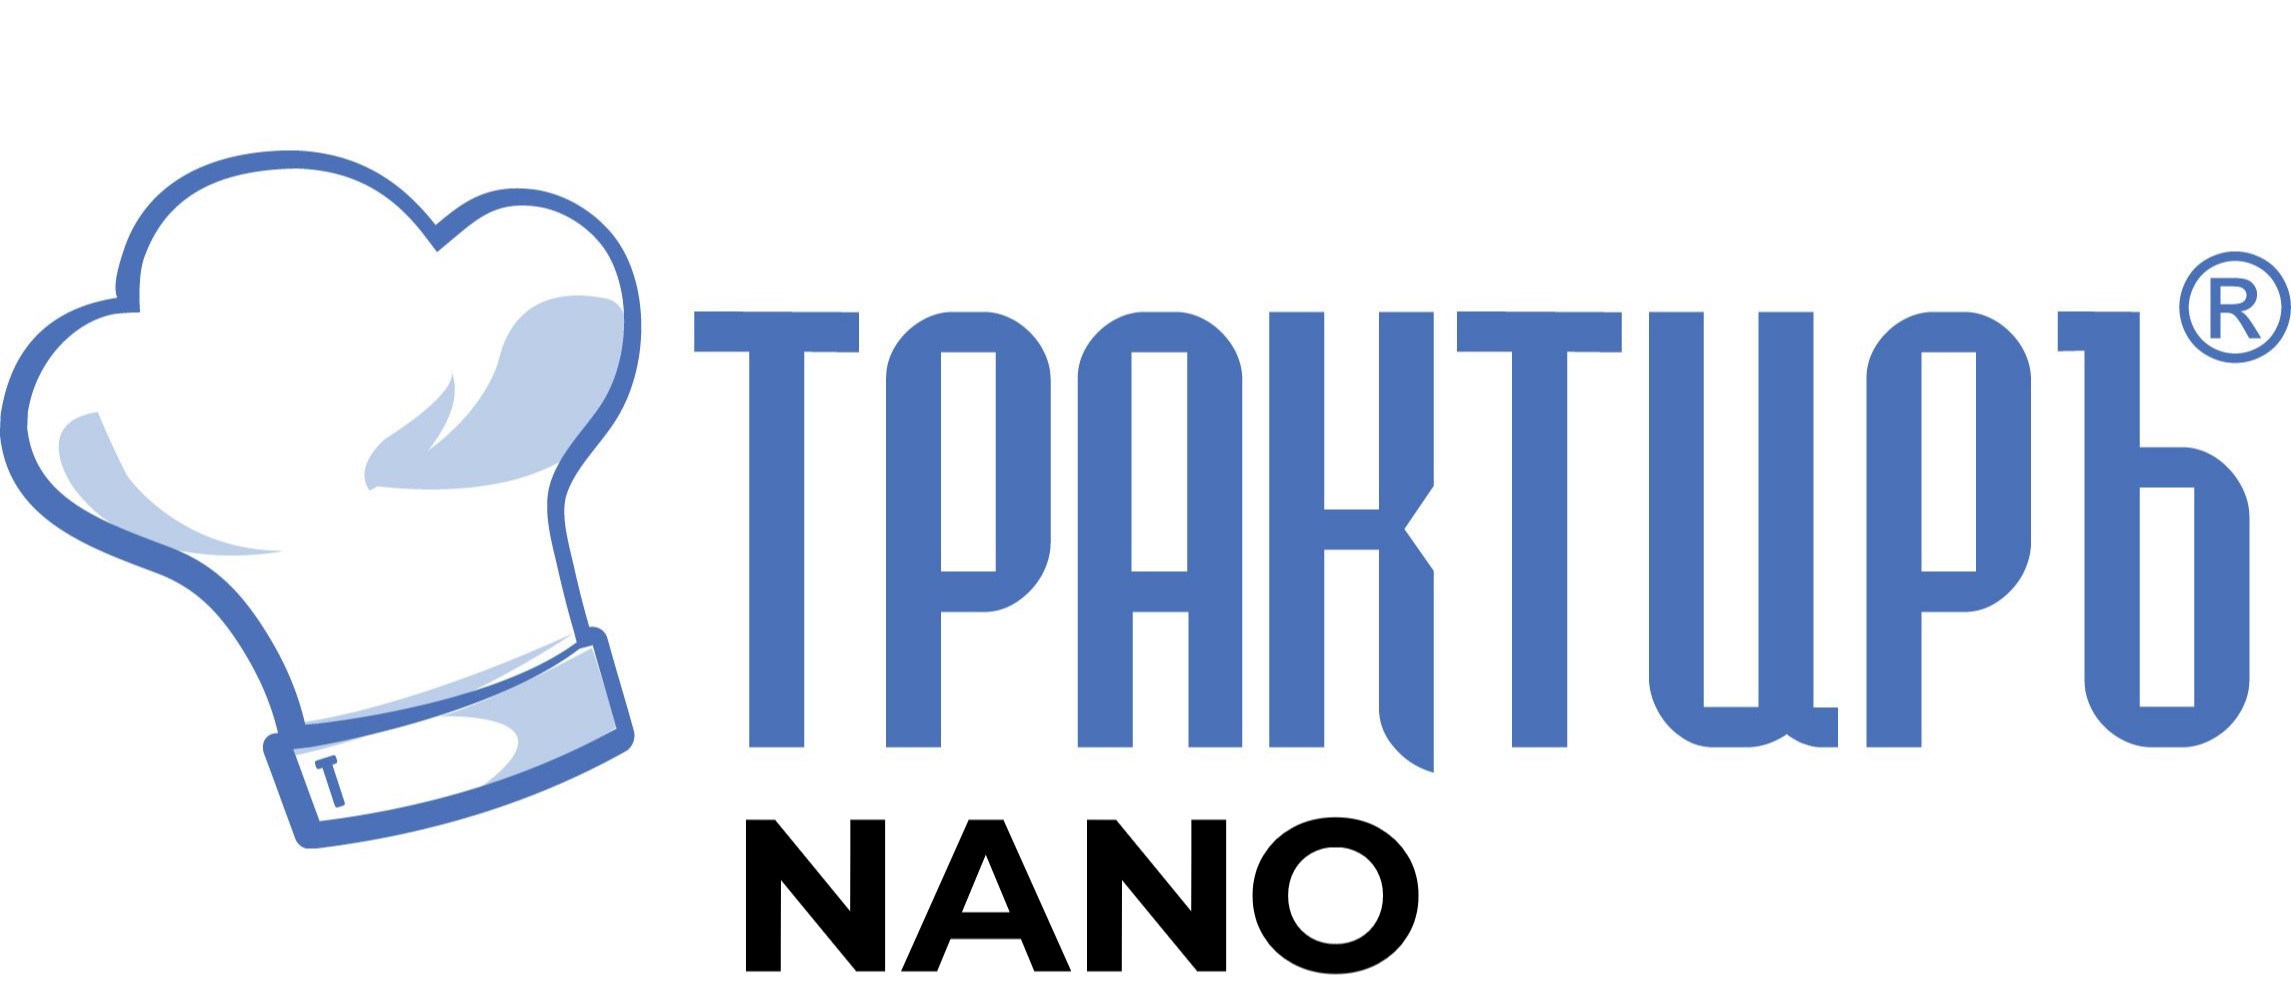 Конфигурация Трактиръ: Nano (Основная поставка) в Чебоксарах